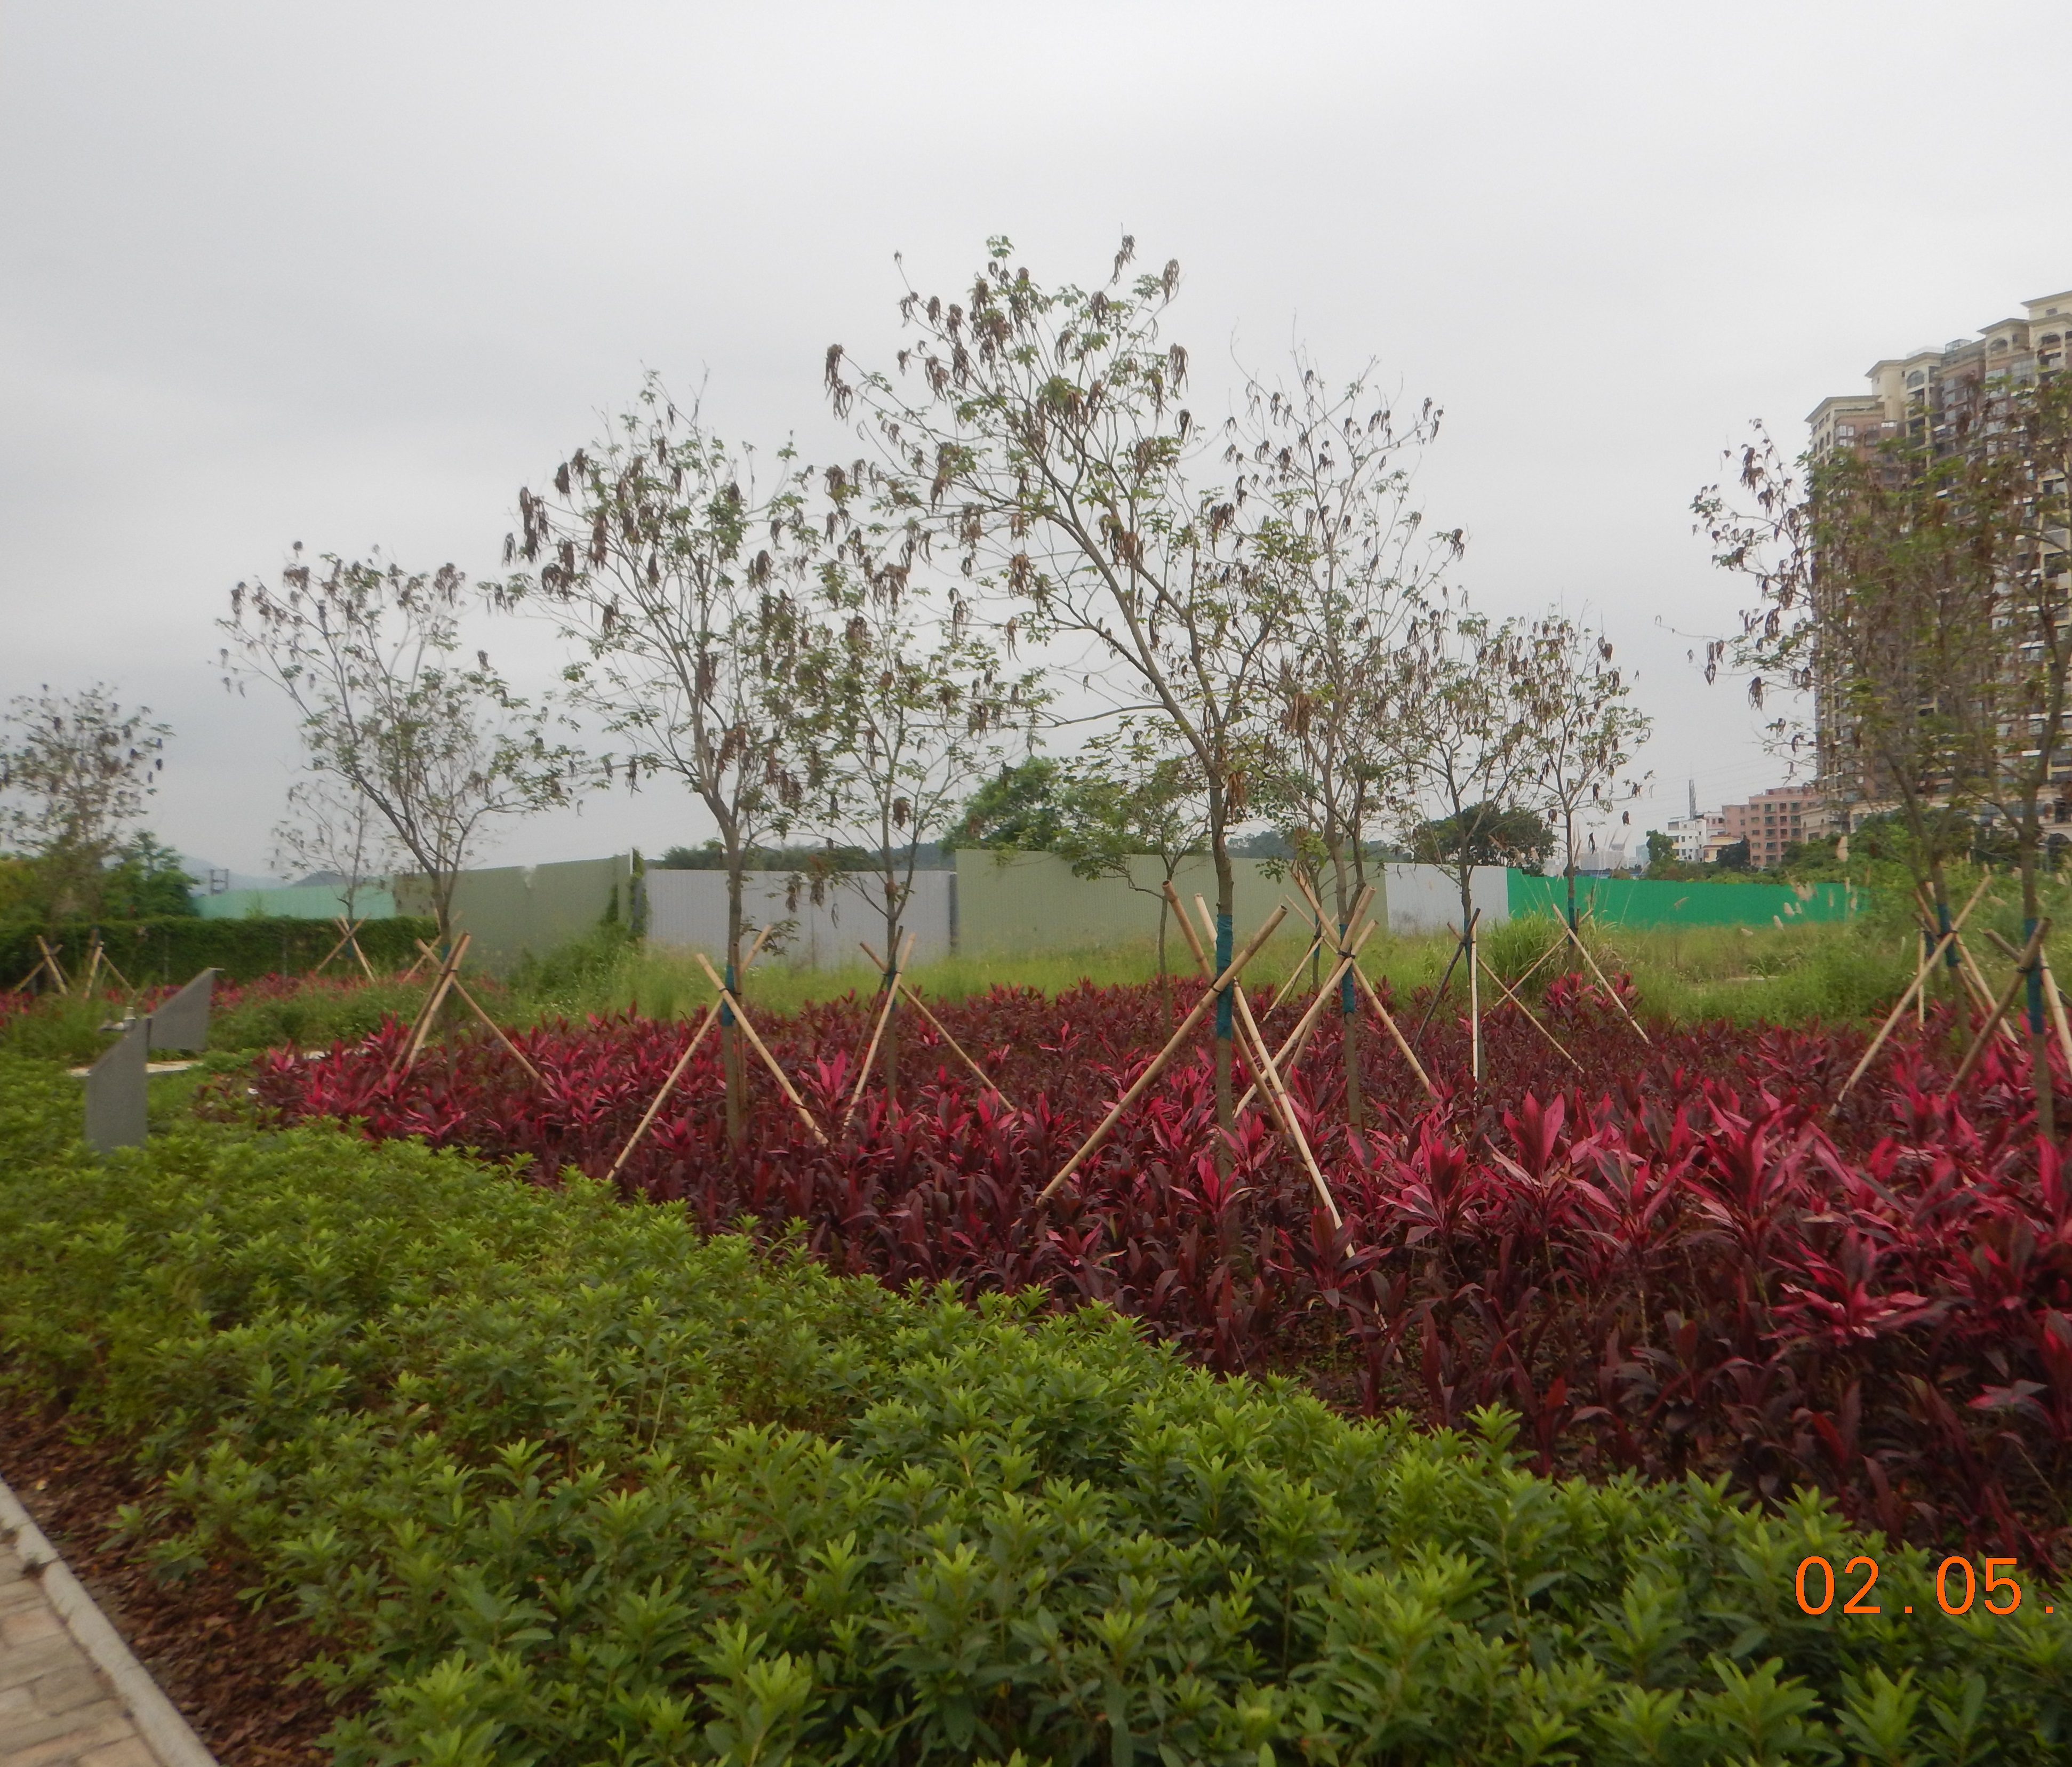 Roadside planting at Lin Ma Hang Road